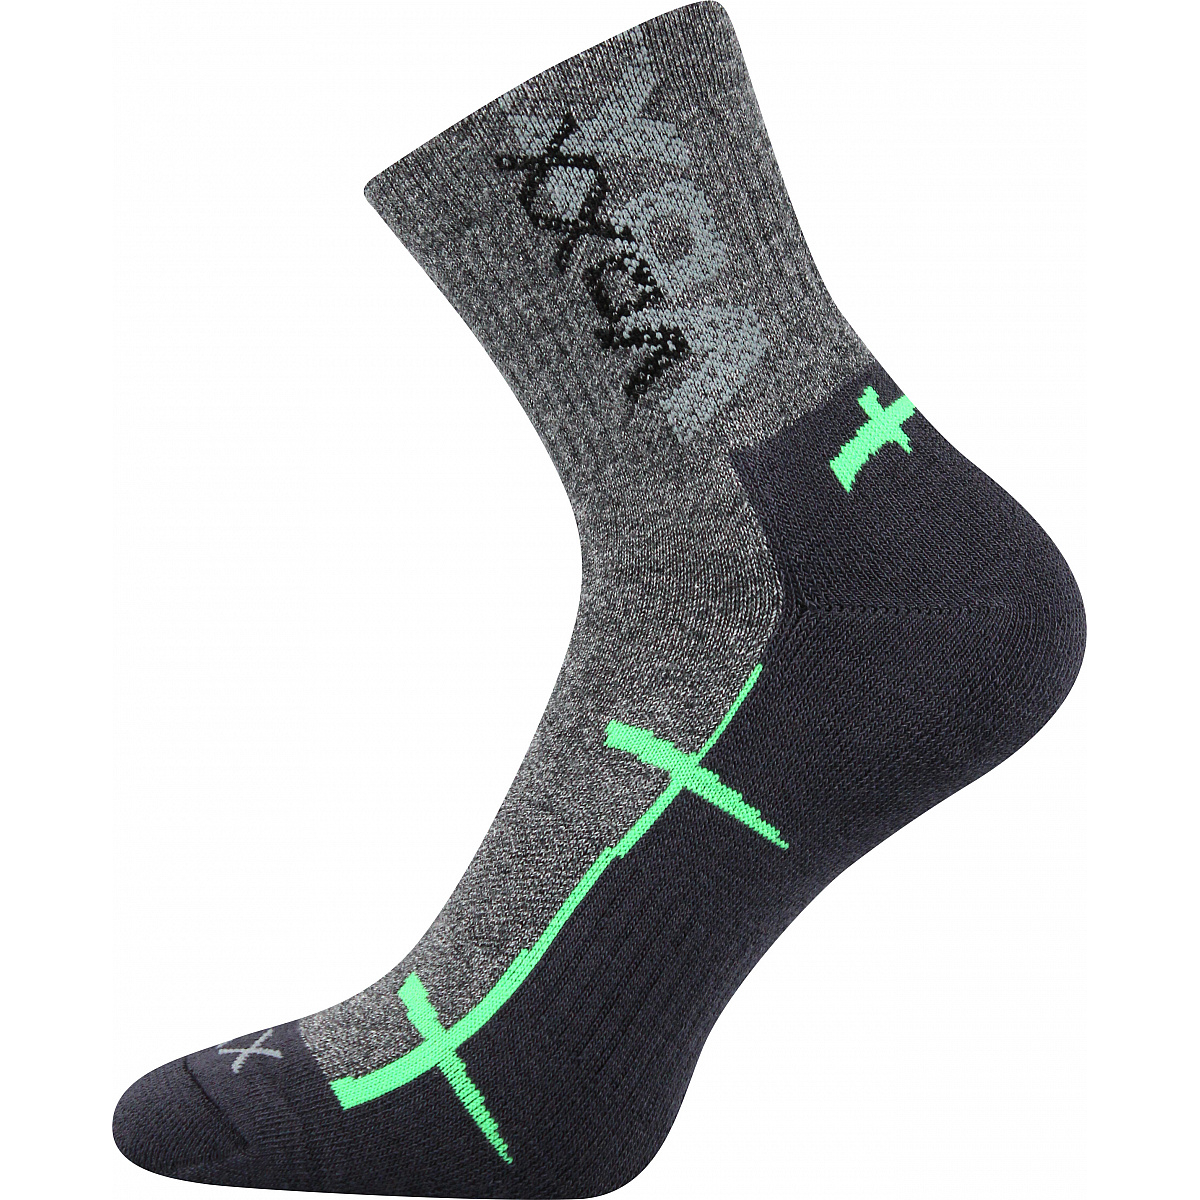 Sportovní ponožky Voxx Walli - šedé-zelené, 47-50